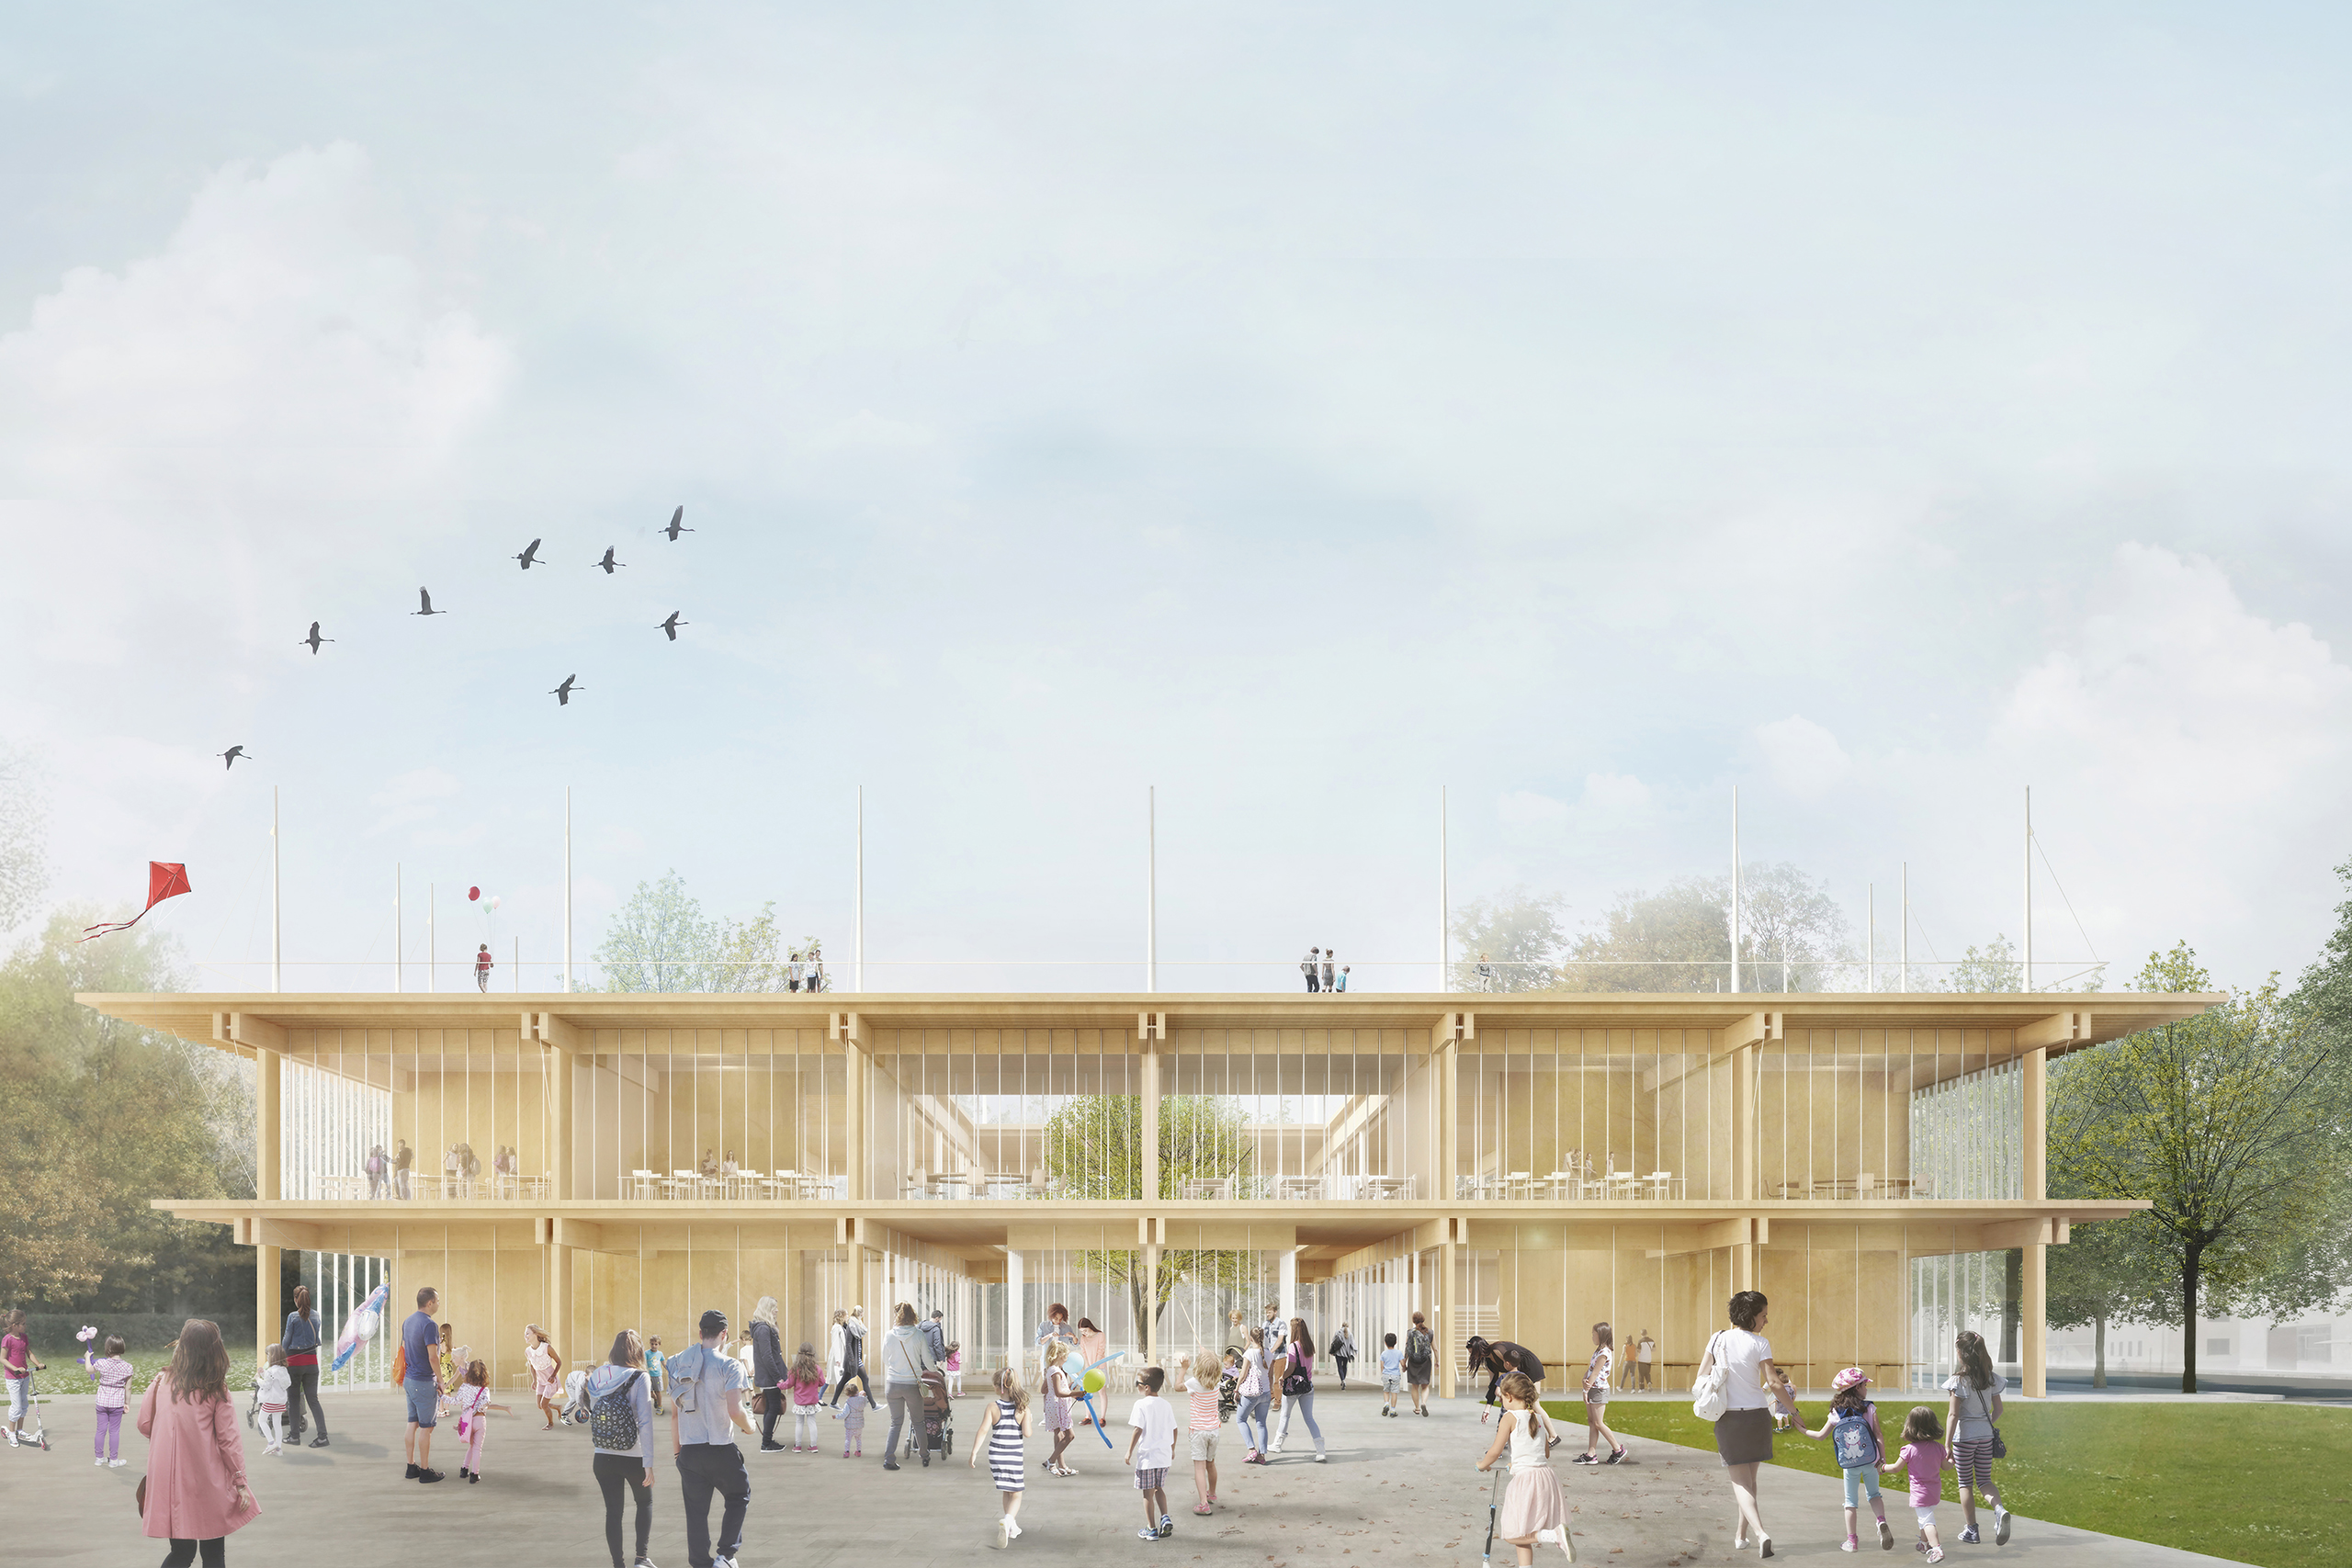 Progetto di Scuola Modello economica ed antisismica a Sora (Frosinone) by Renzo Piano